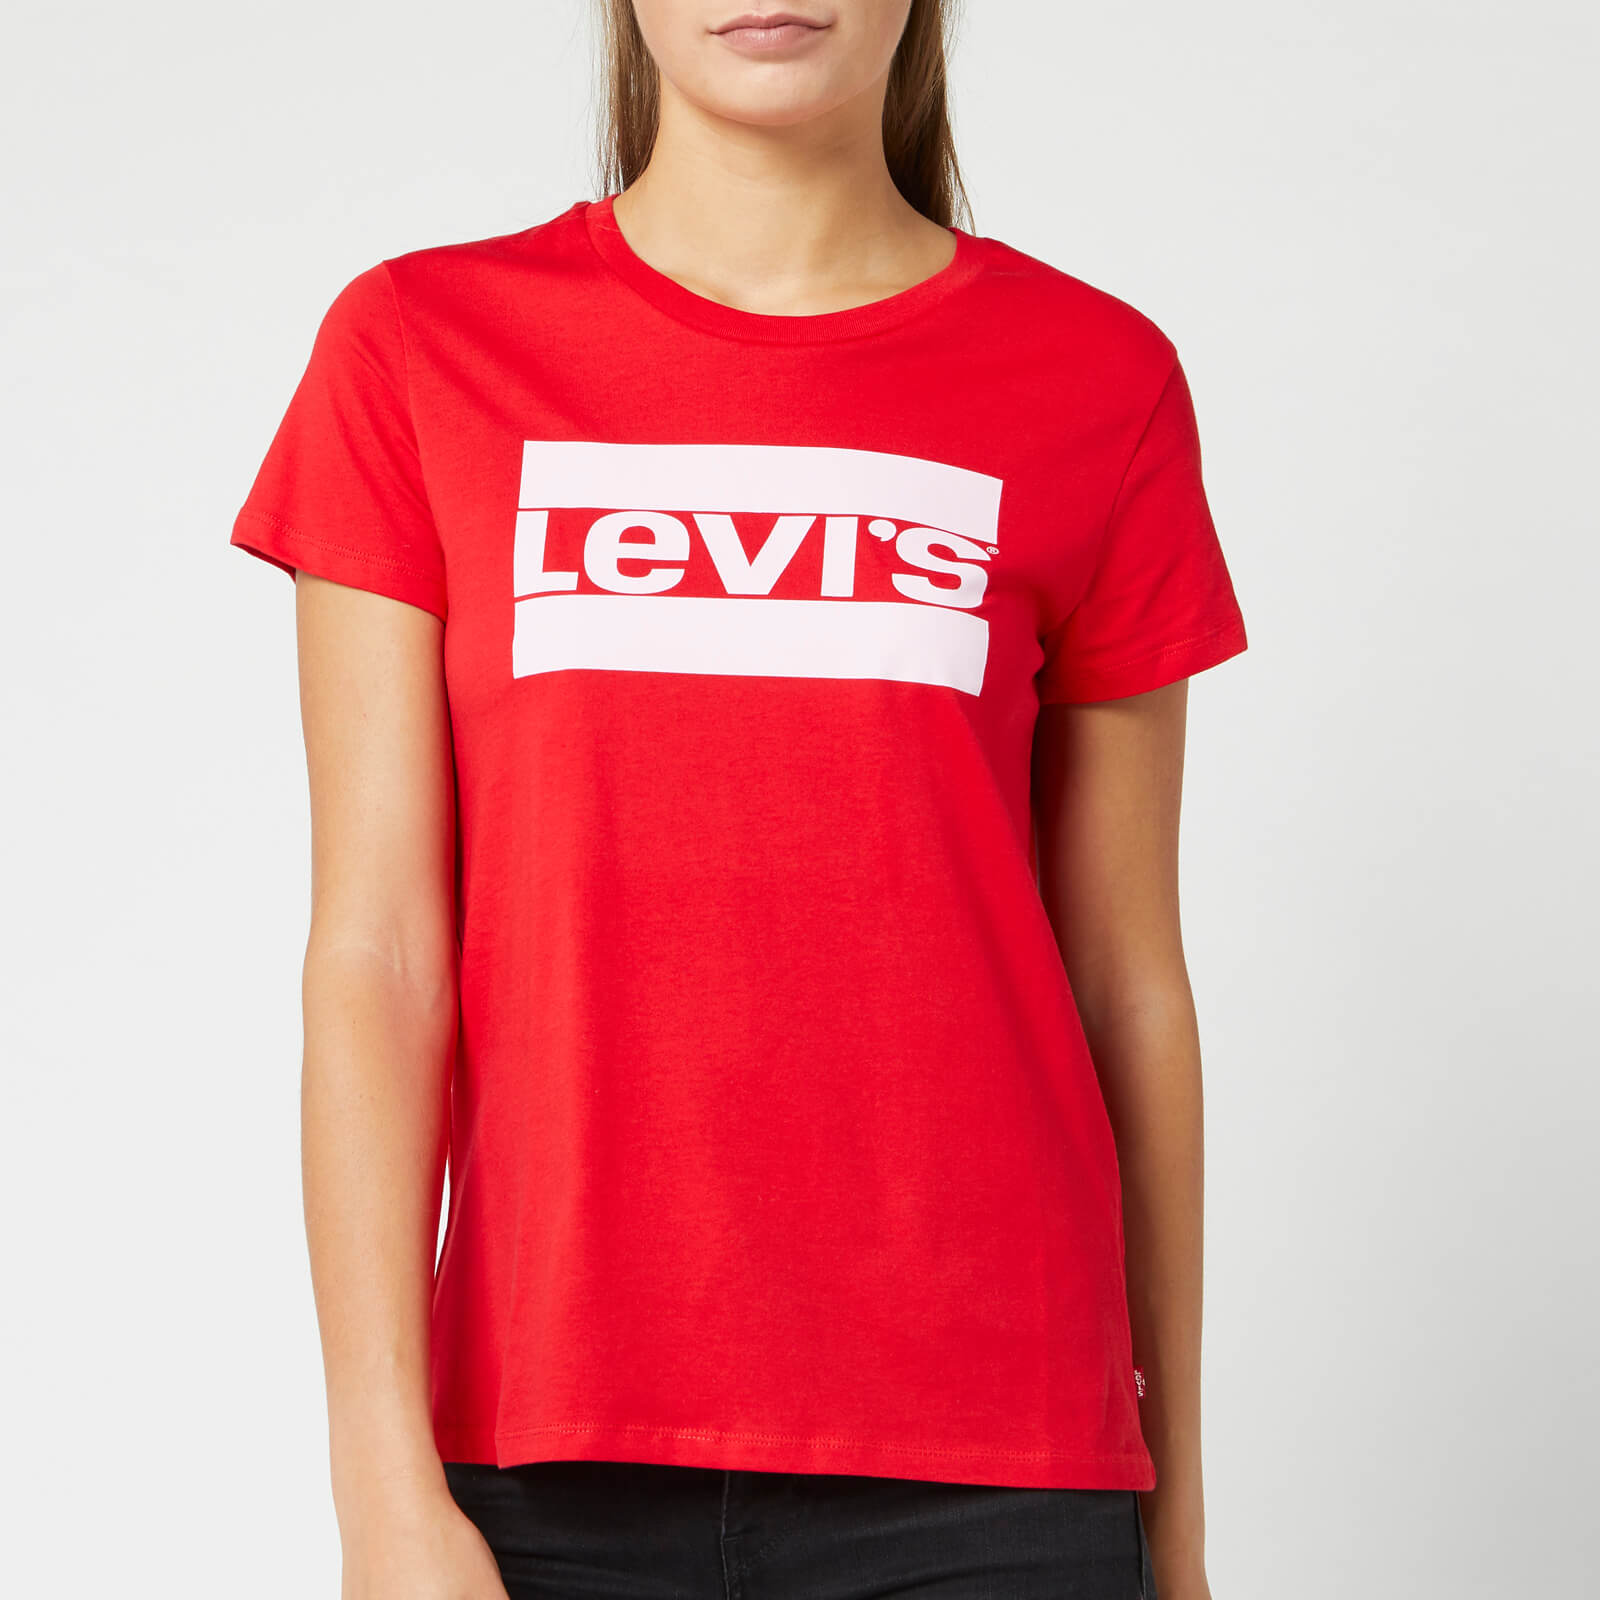 levis red t shirt women